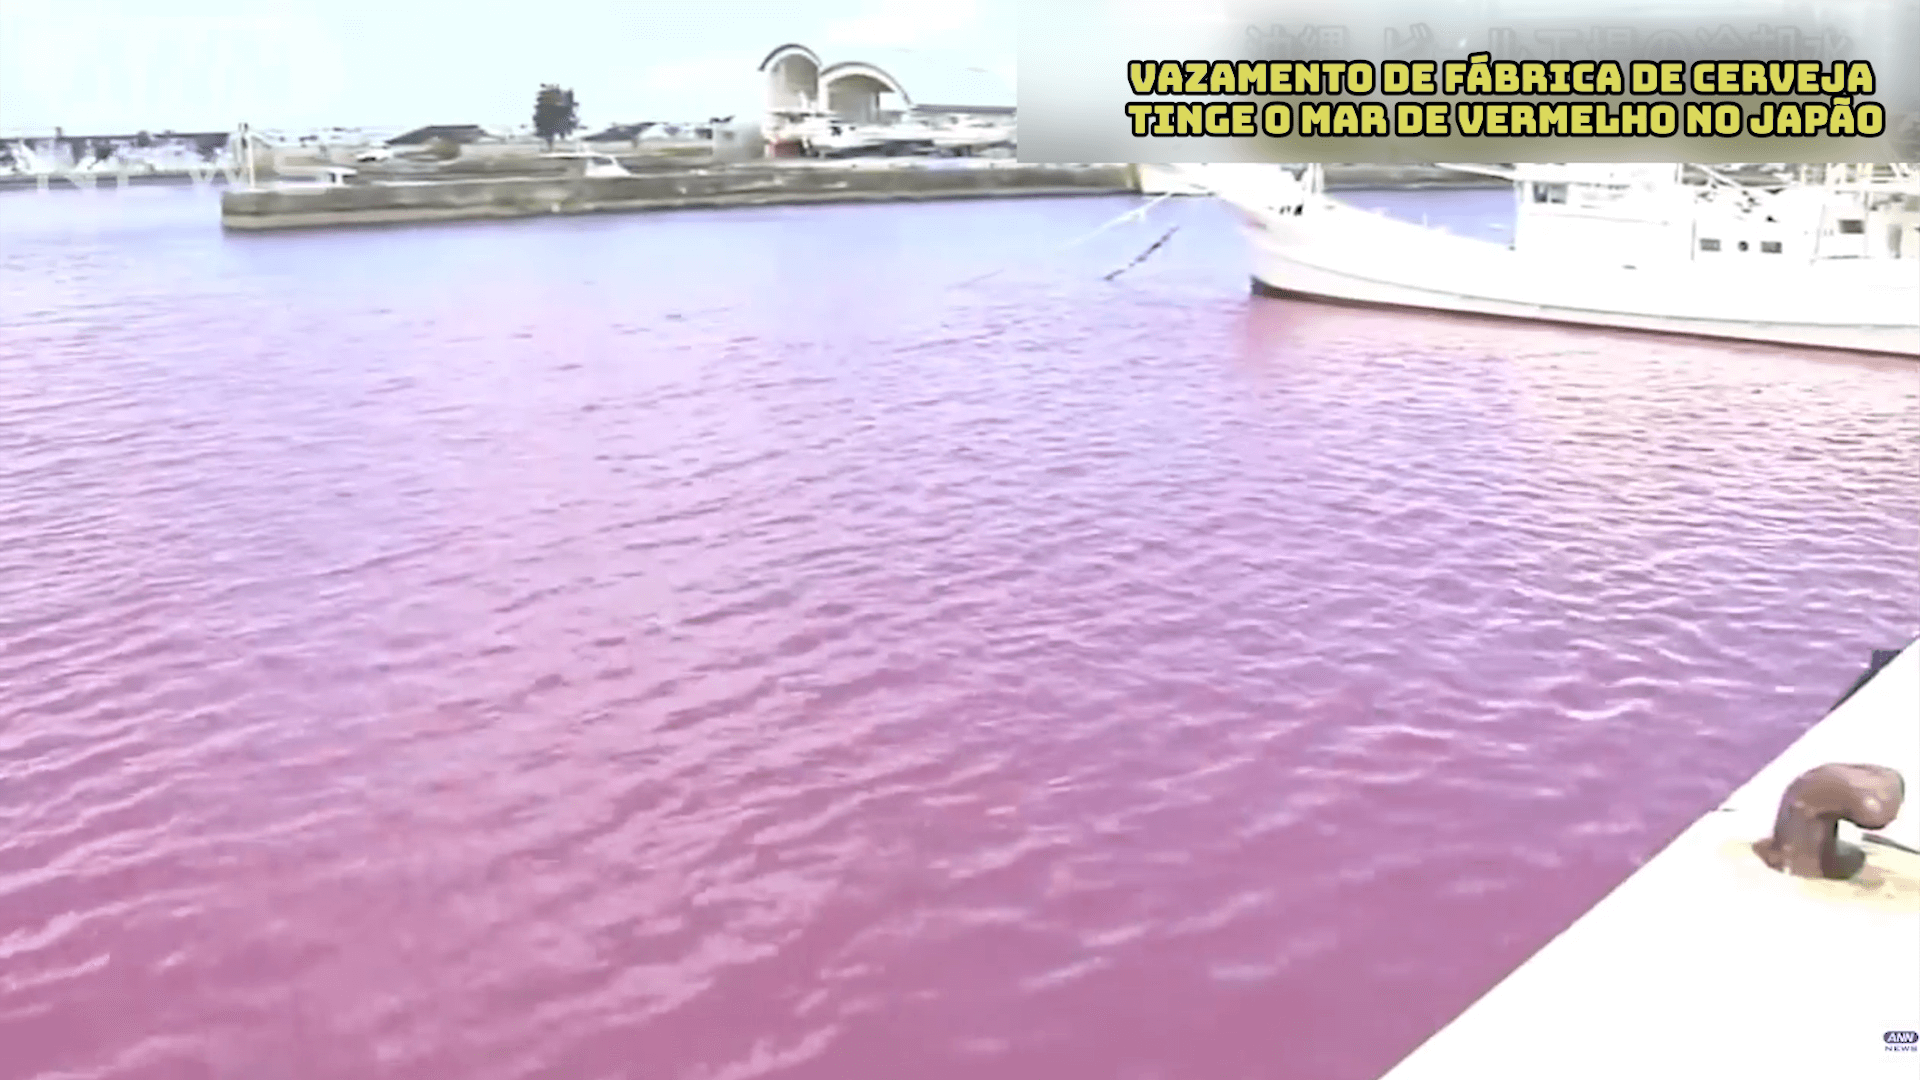 Vazamento de fábrica de cerveja tinge o mar de vermelho no Japão